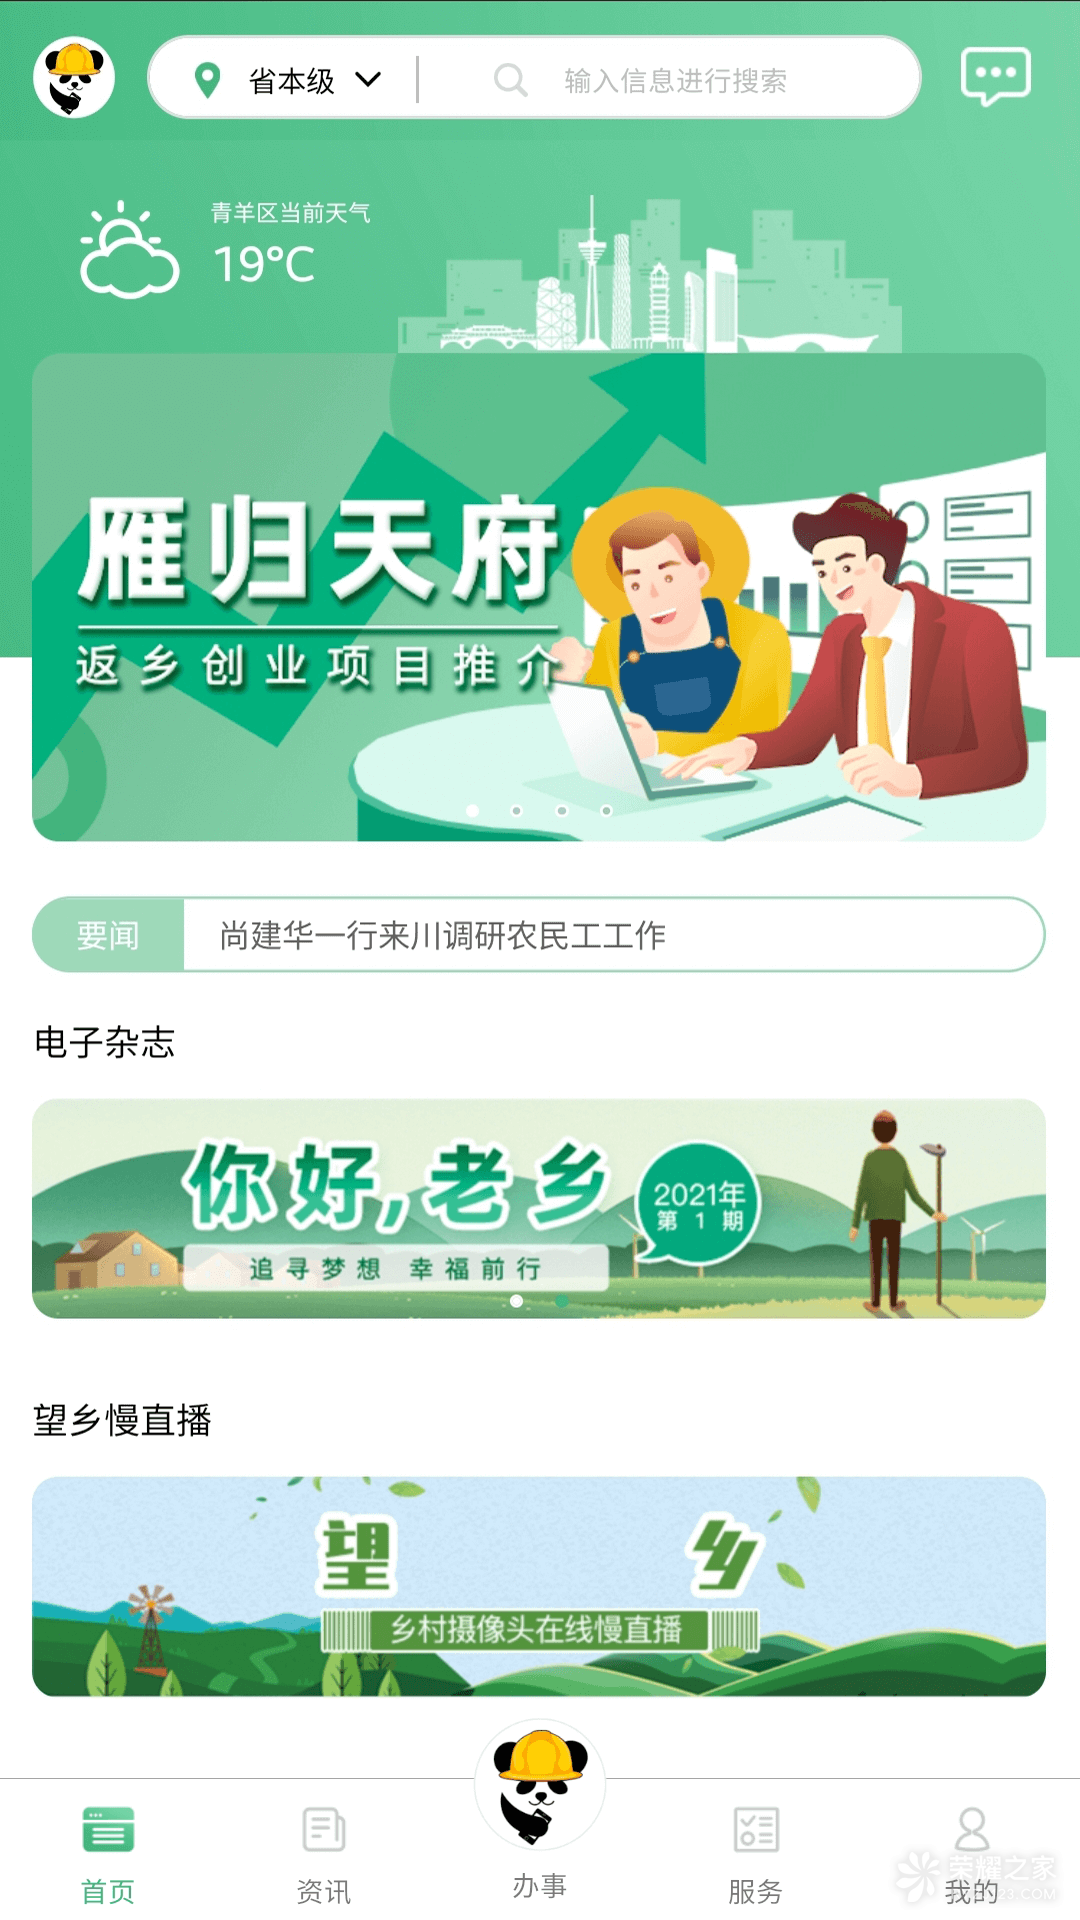 四川农民工服务平台